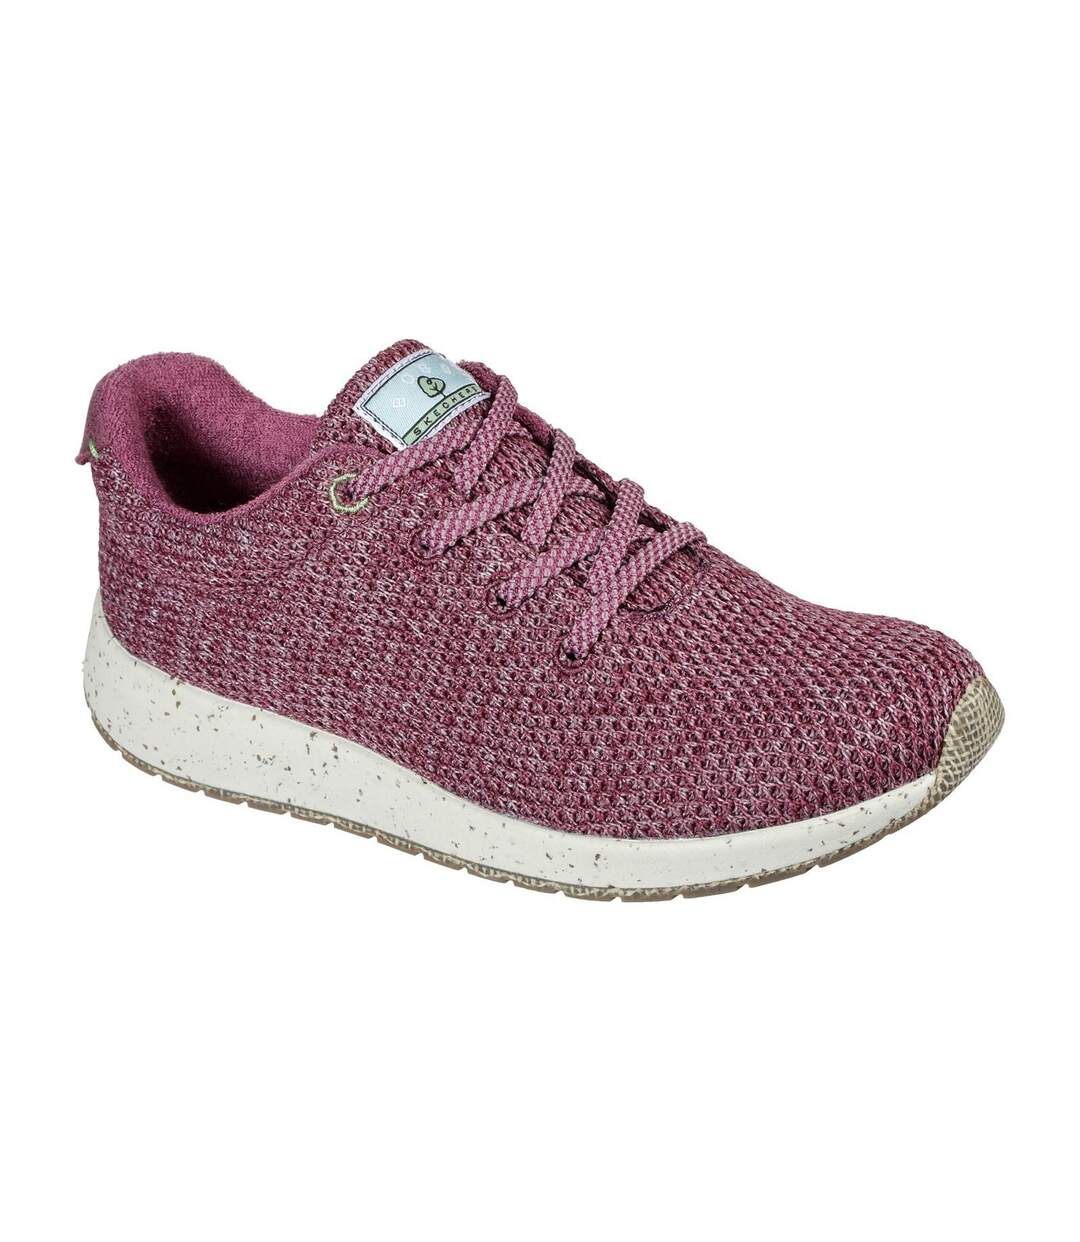 Skechers Womens/Ladies Bobs Earth Sneakers (Raspberry) - UTFS7660